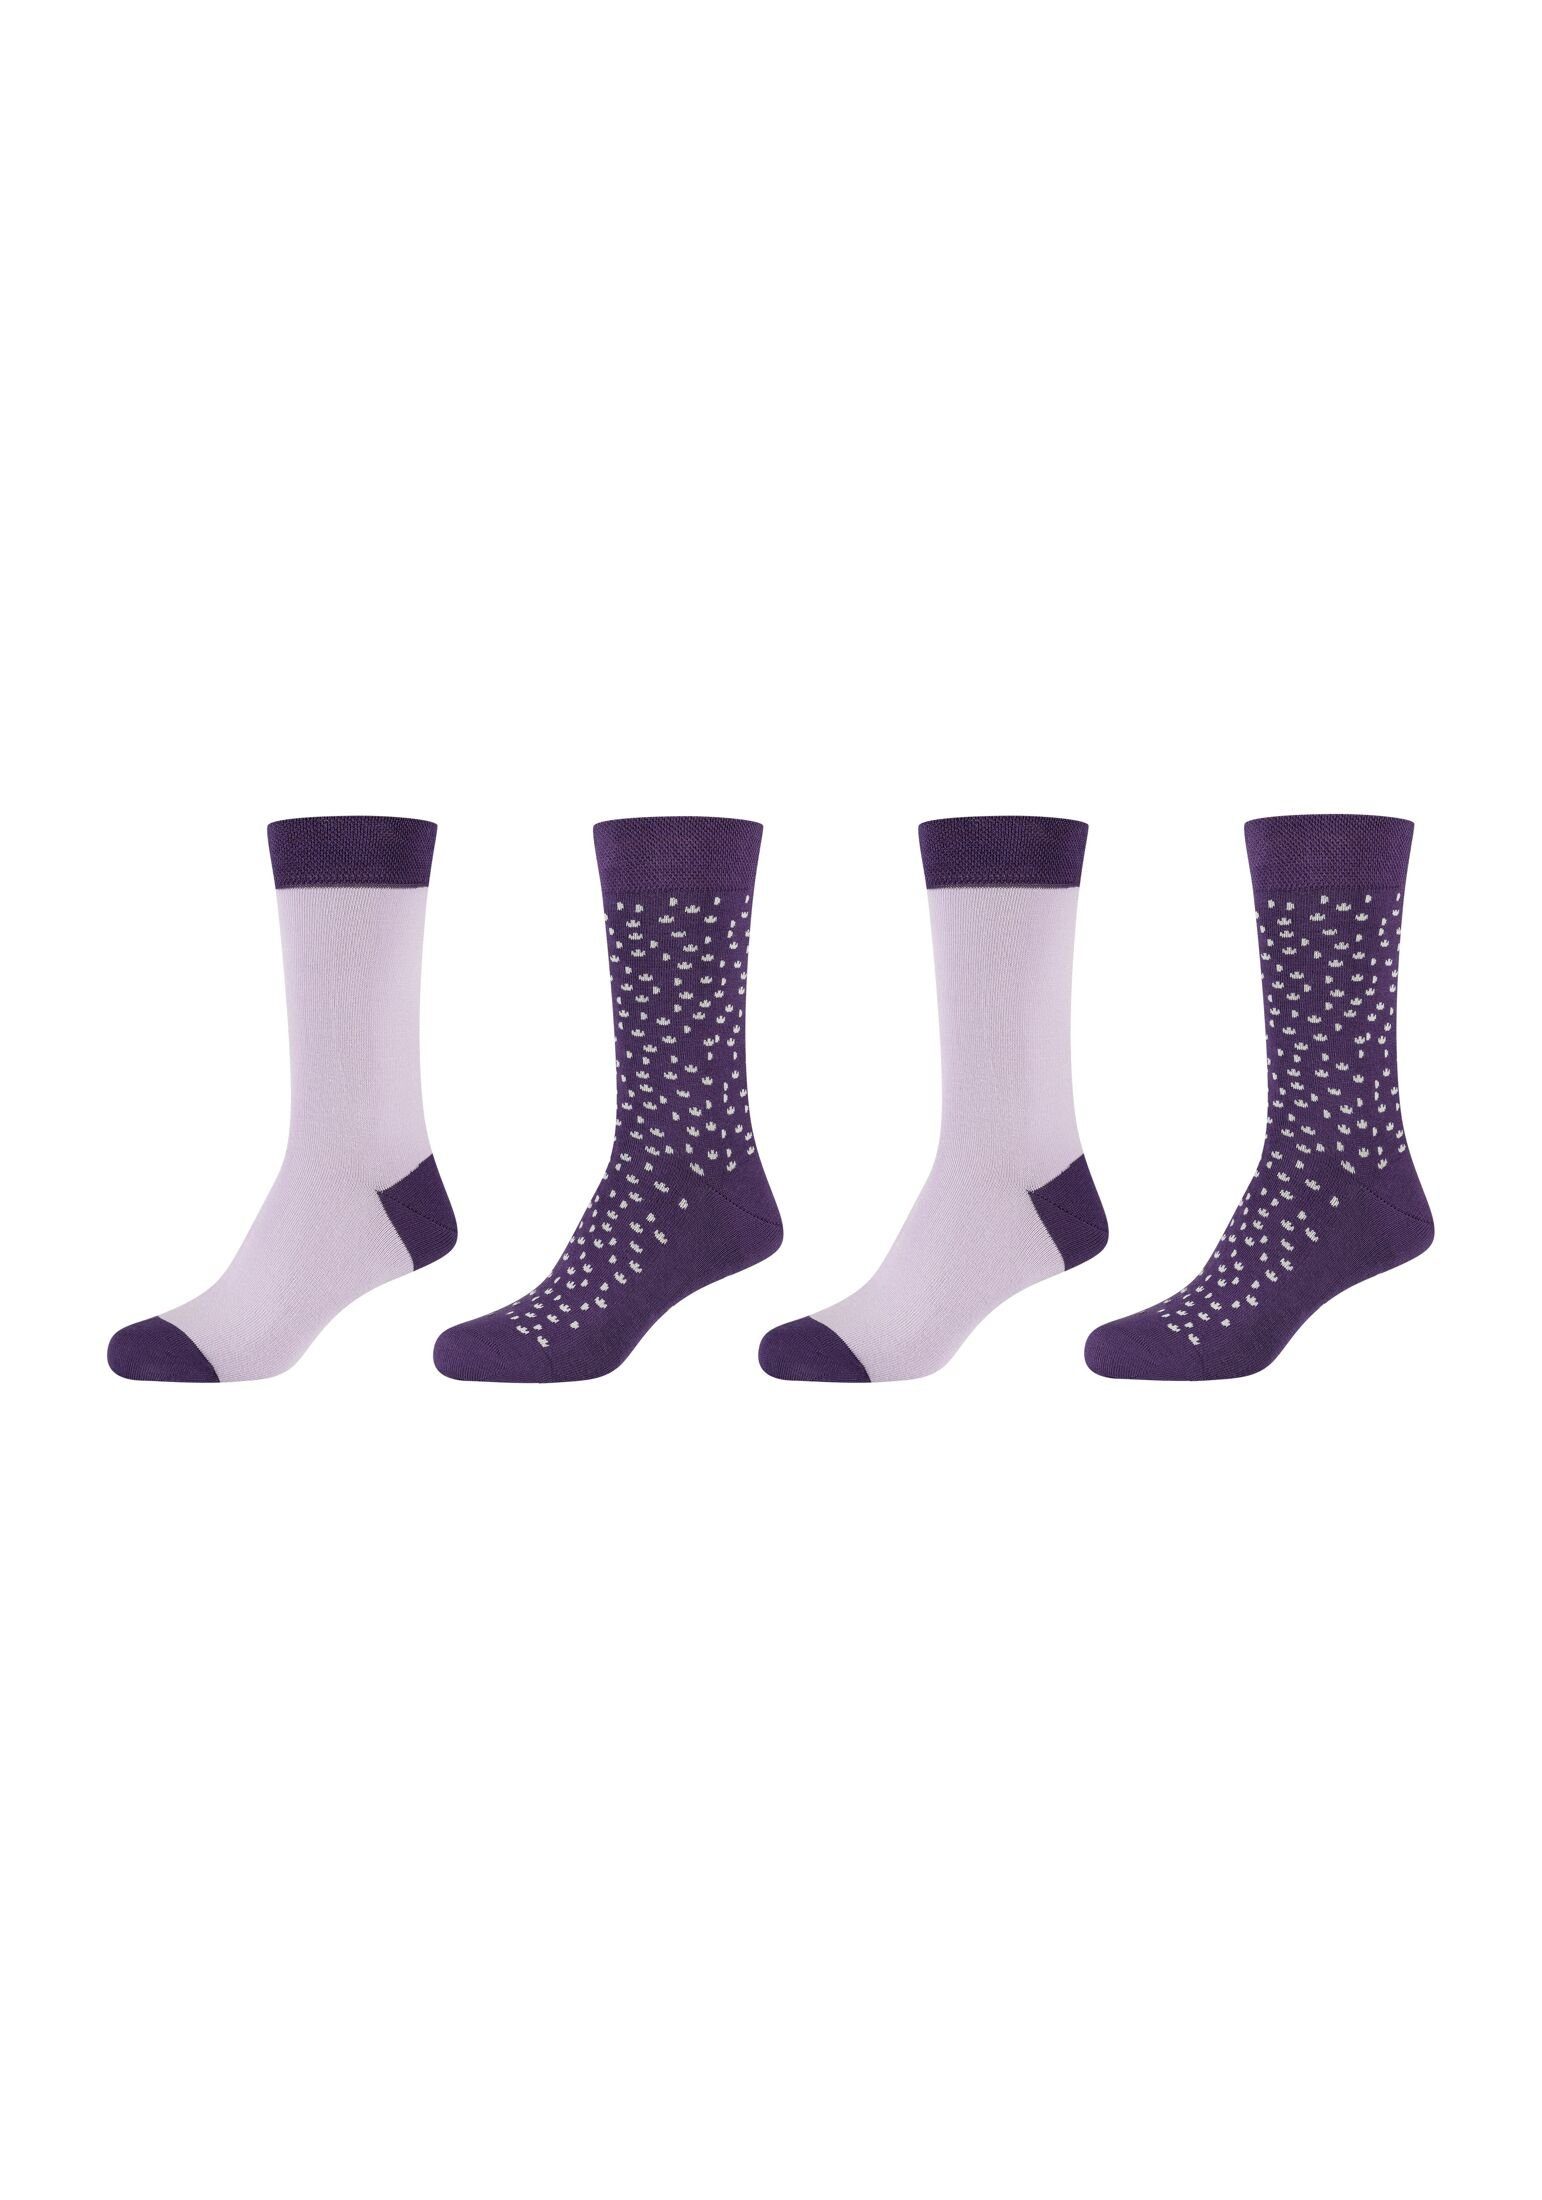 Camano Socken Socken 4er Pack mulberry purple